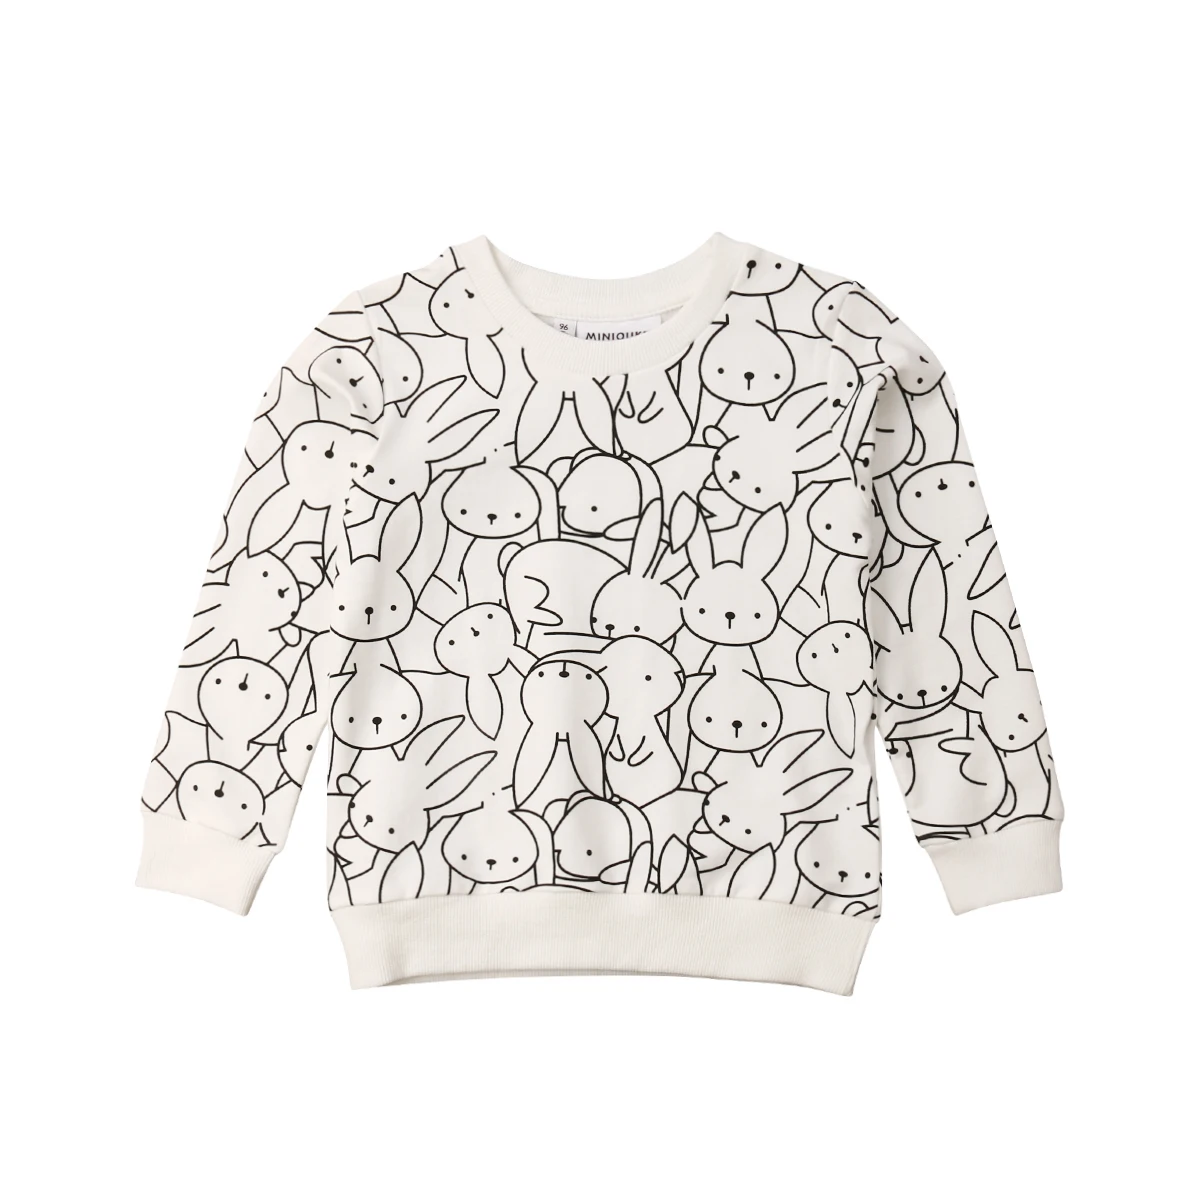 Детская футболка с леопардовым принтом и принтом кролика для маленьких мальчиков и девочек в США, толстовки, одежда